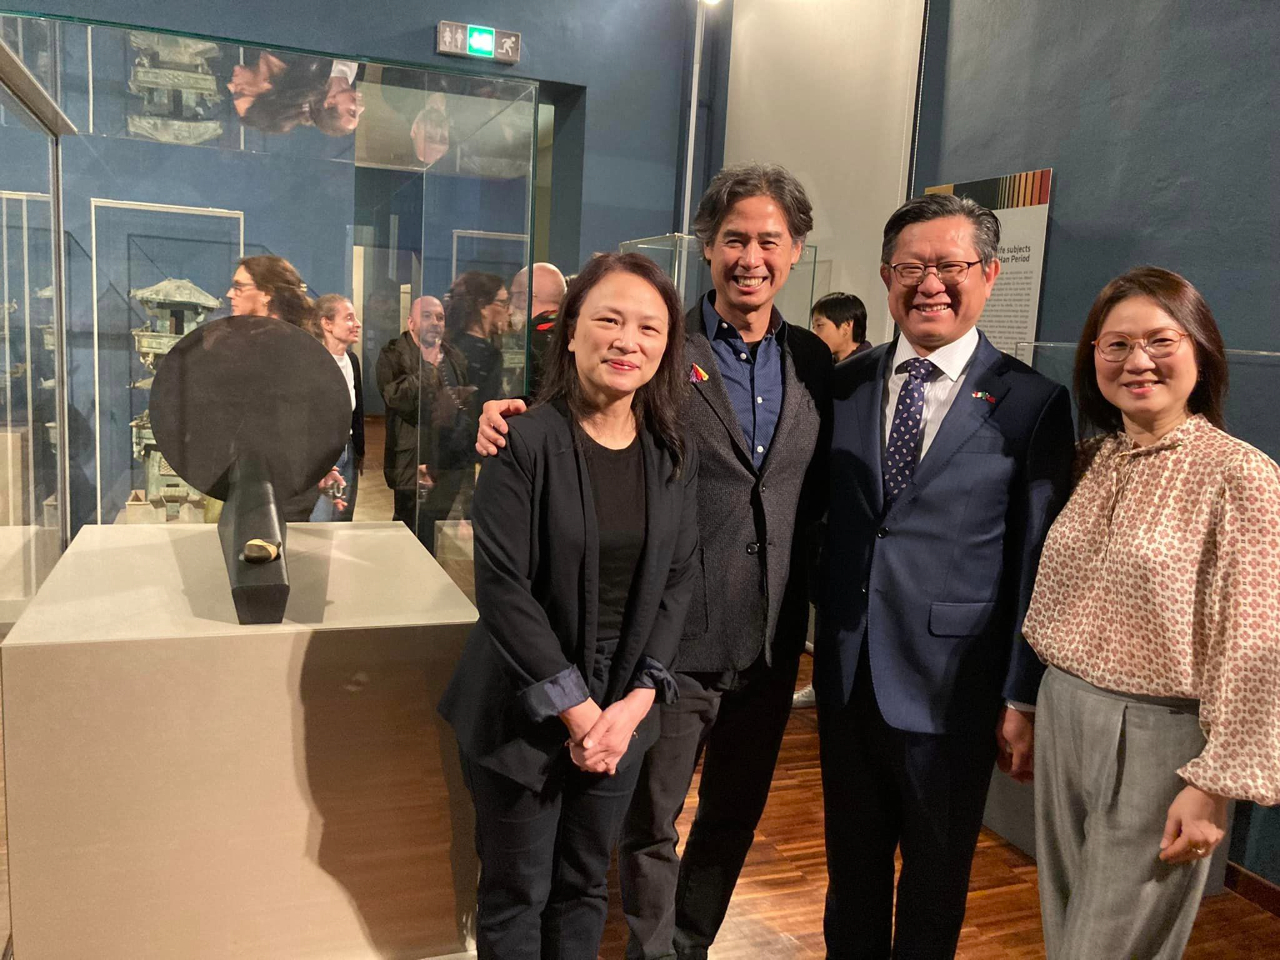 林處長夫婦與駐義大利代表處文化組鄧組長出席台灣藝術家李明維在杜林東方藝術博物館展出新作品《石之聲》開幕式